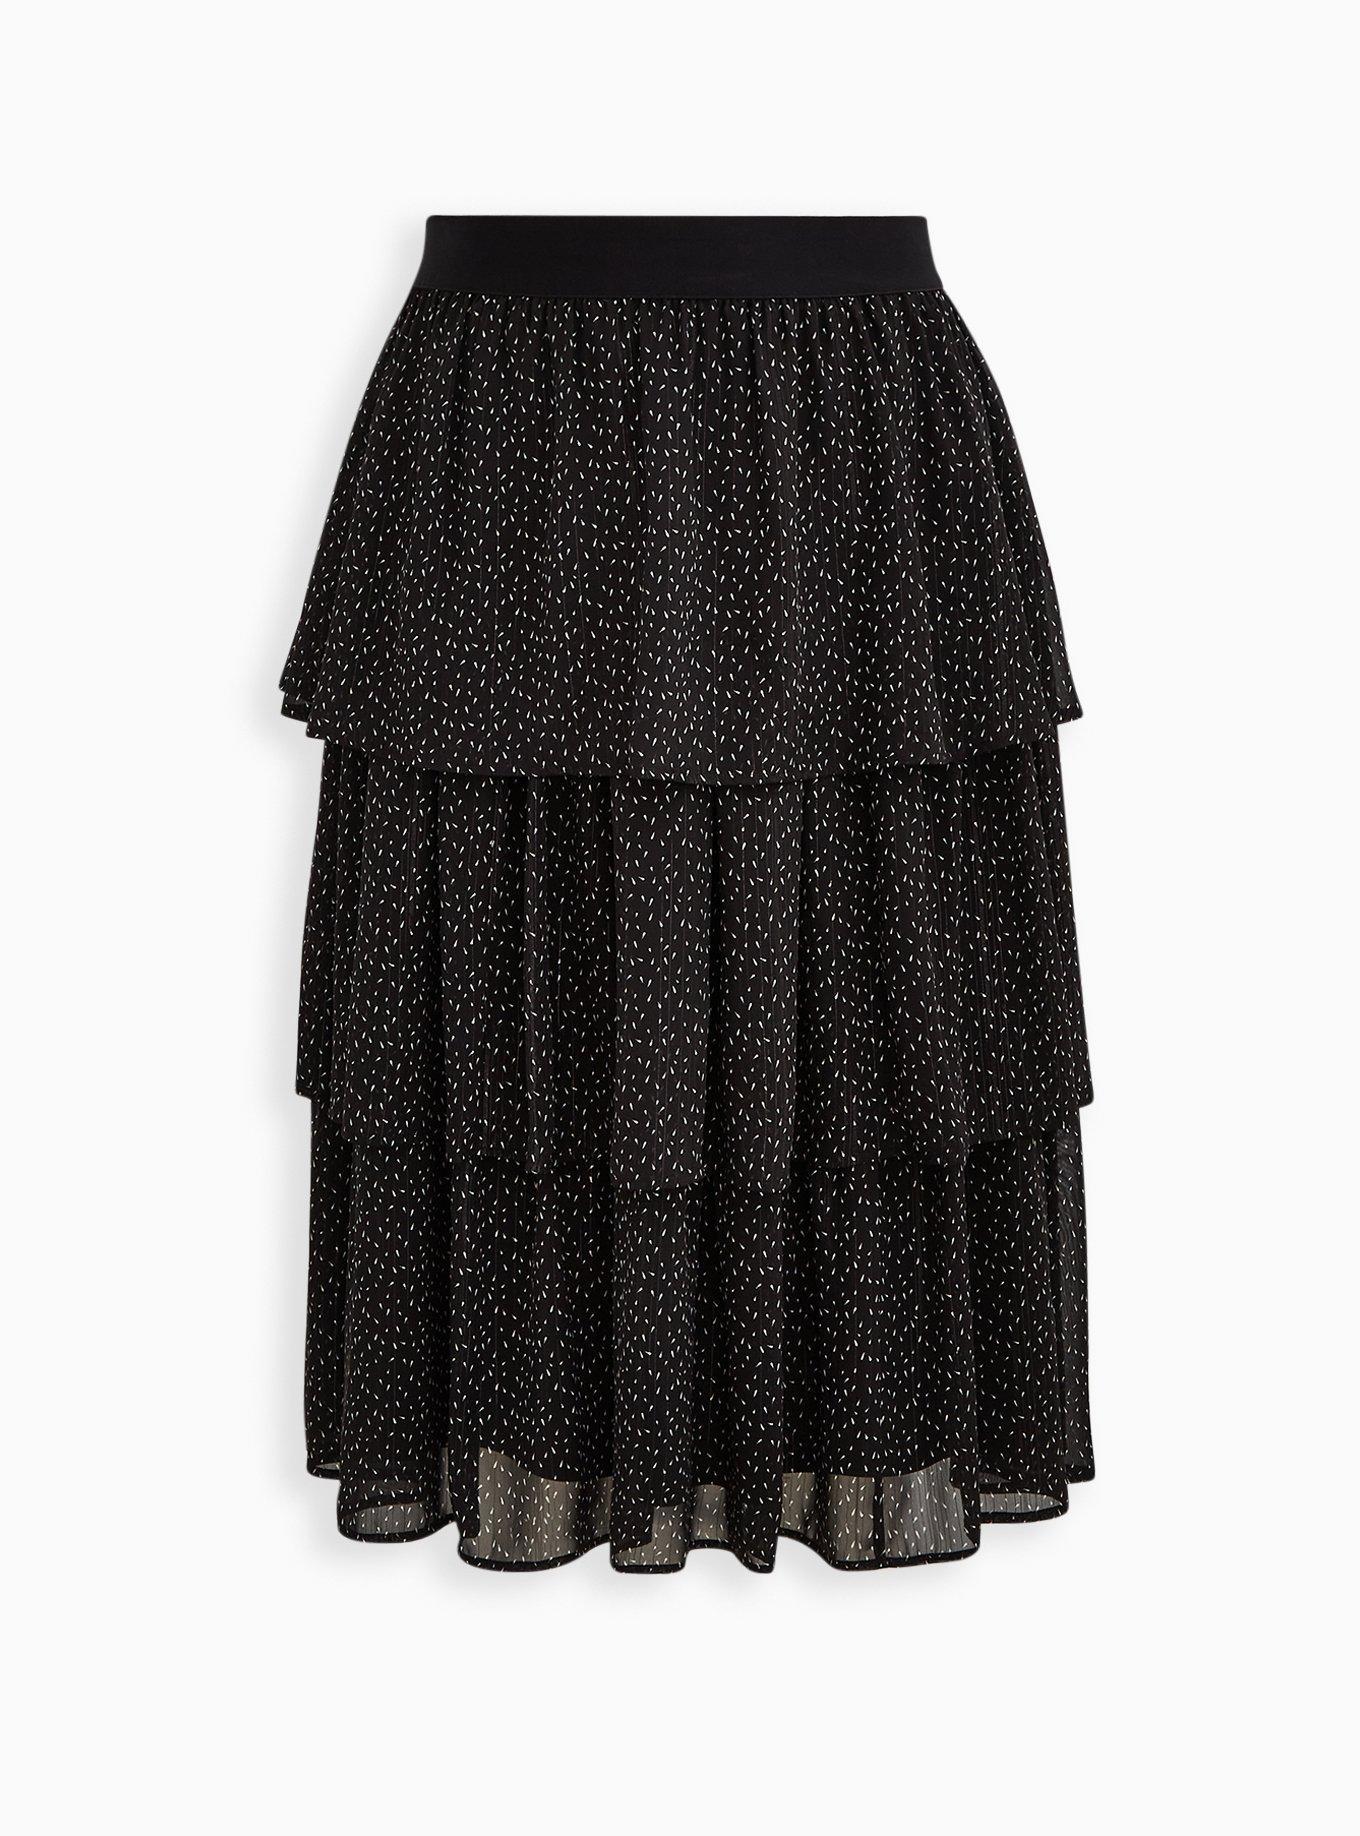 Plus Size - Black Chiffon Tiered Midi Skirt - Torrid